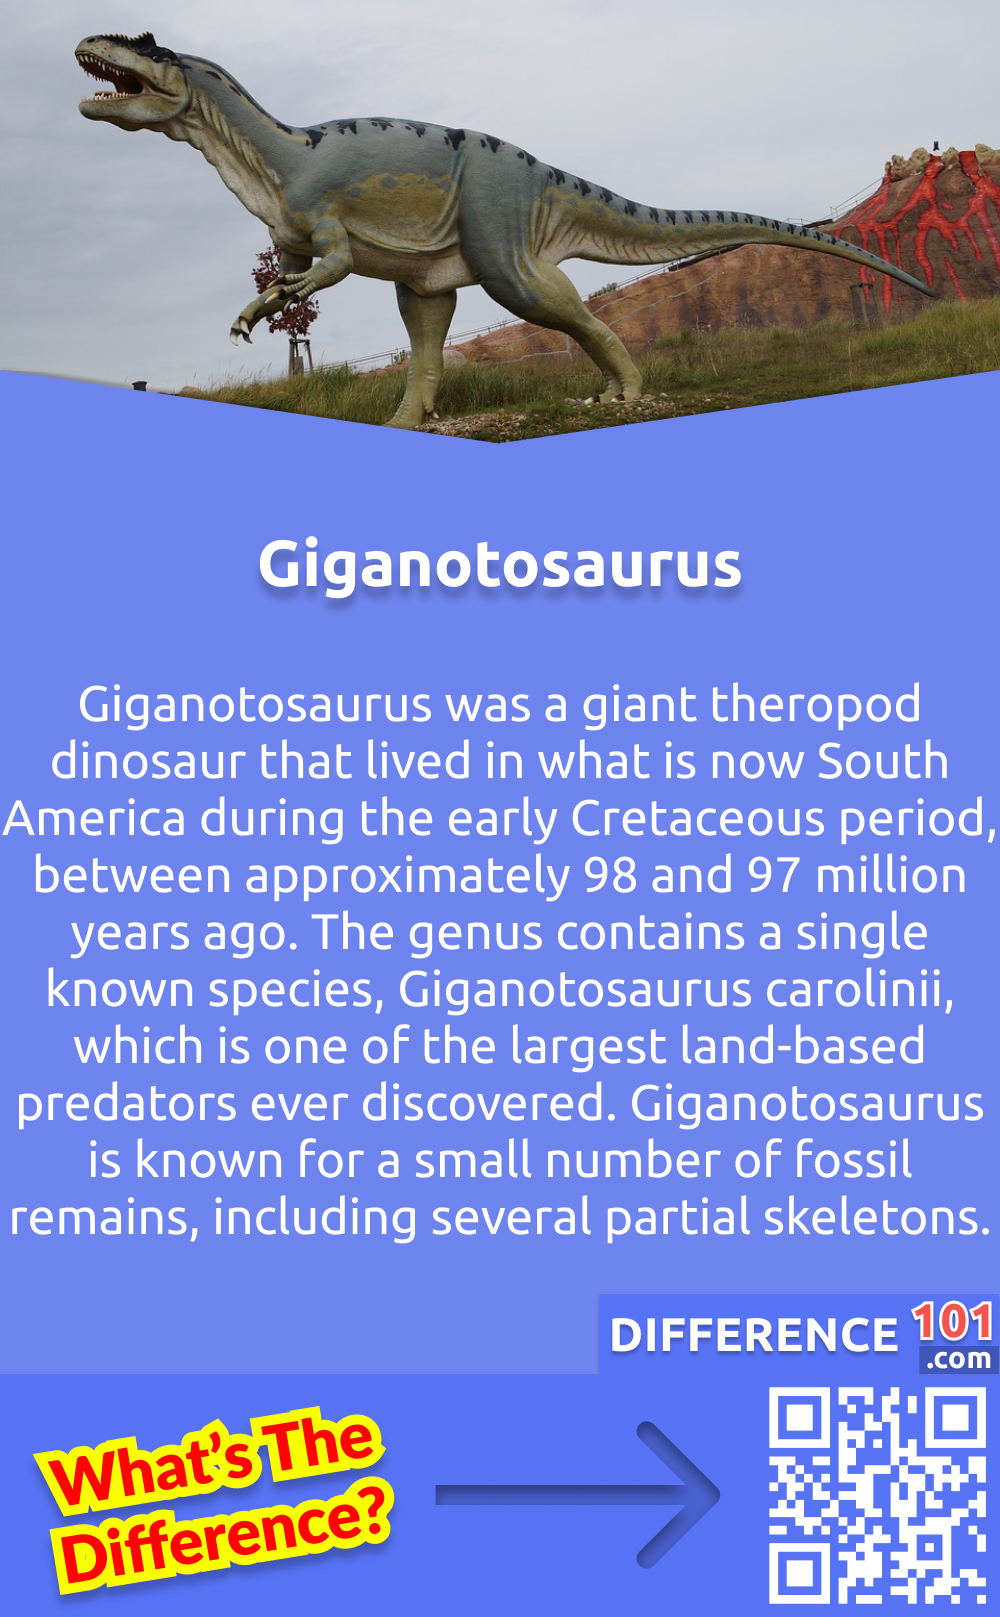 Qu'est-ce que le Giganosaurus ? Le Giganotosaurus était un dinosaure théropode géant qui vivait dans ce qui est aujourd'hui l'Amérique du Sud au début du Crétacé, entre 98 et 97 millions d'années environ. Le genre contient une seule espèce connue, le Giganotosaurus carolinii, qui est l'un des plus grands prédateurs terrestres jamais découverts. Le Giganotosaurus est connu pour un petit nombre de restes fossiles, dont plusieurs squelettes partiels.